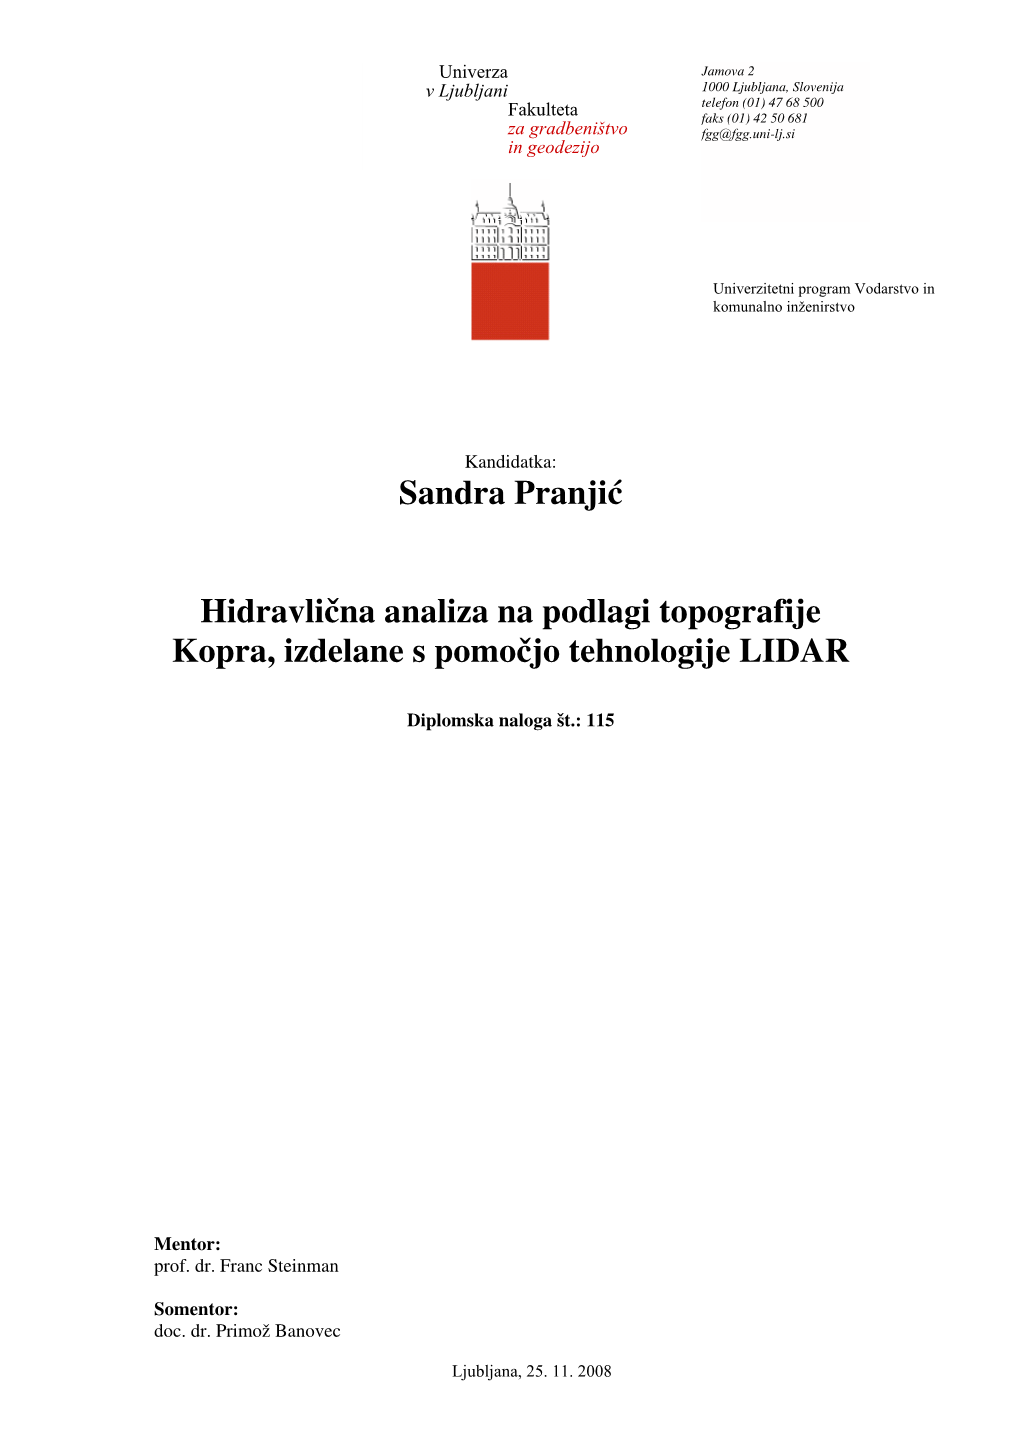 Sandra Pranjić Hidravlična Analiza Na Podlagi Topografije Kopra, Izdelane